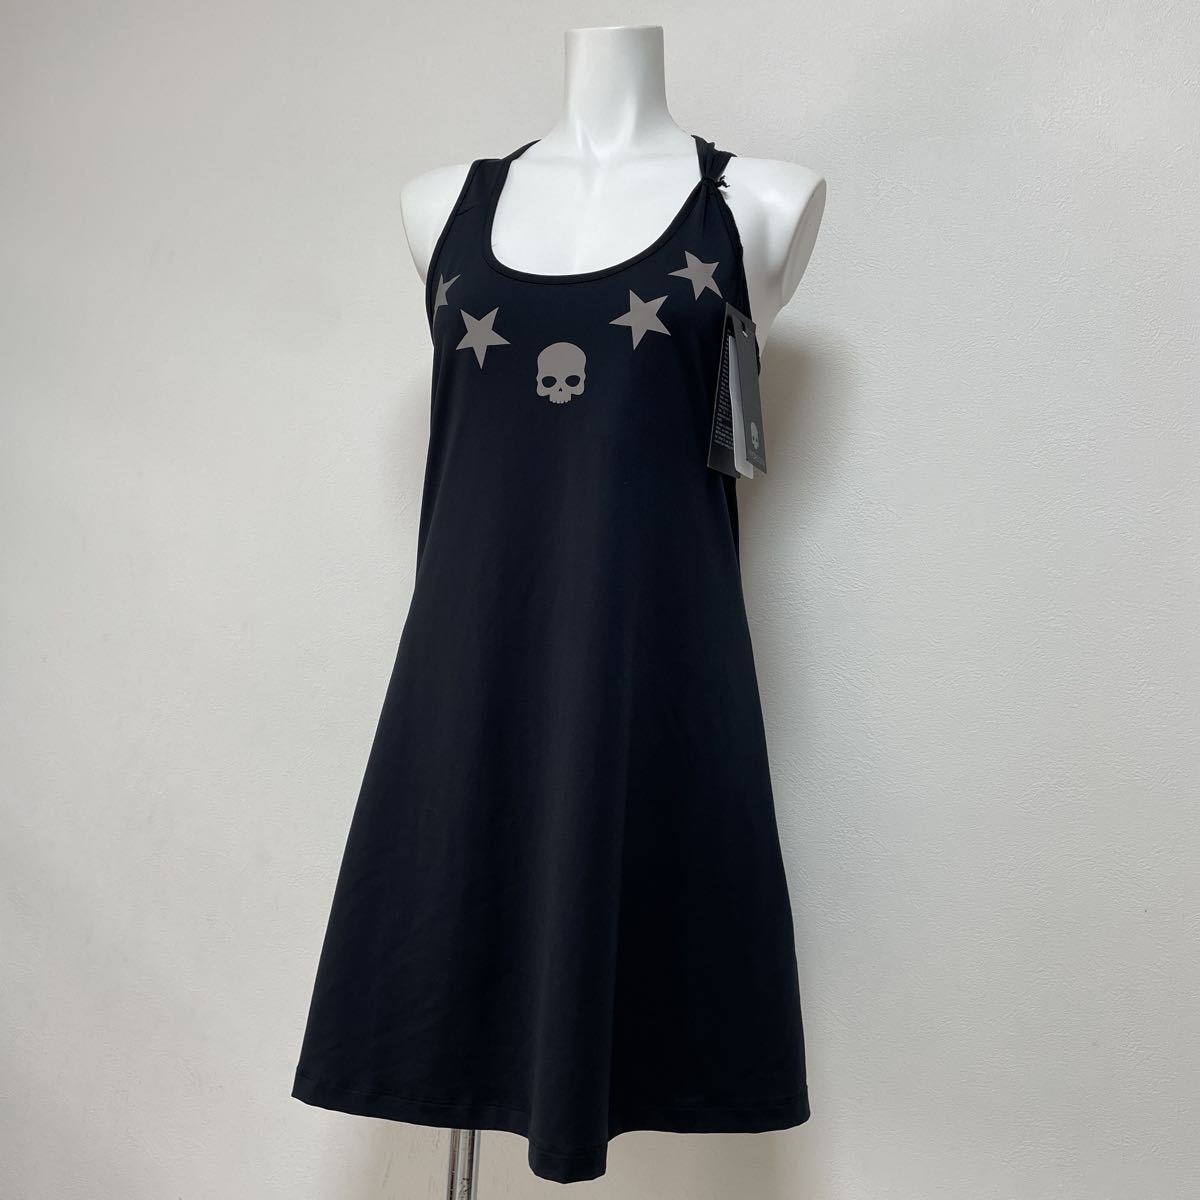  новый товар Hydrogen (HYDROGEN) женский Tec Star платье теннис одежда One-piece черный чёрный за границей размер M не использовался с биркой 